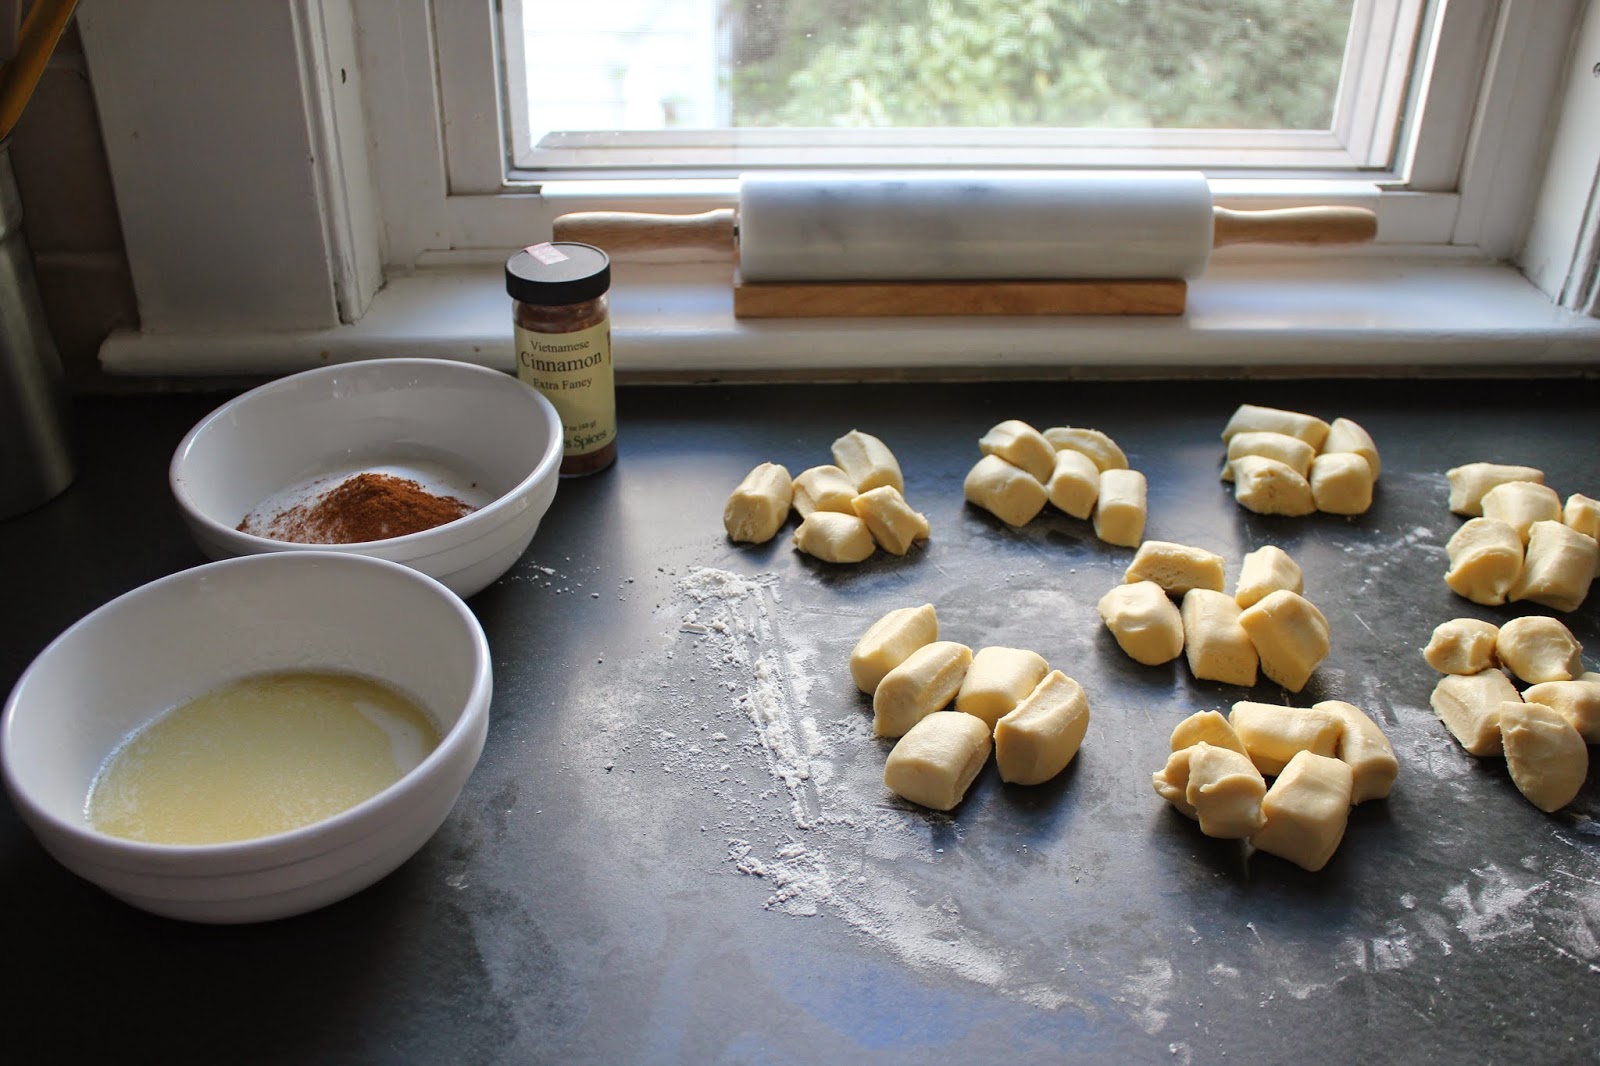 Making cinnamon-sugar brioche buns